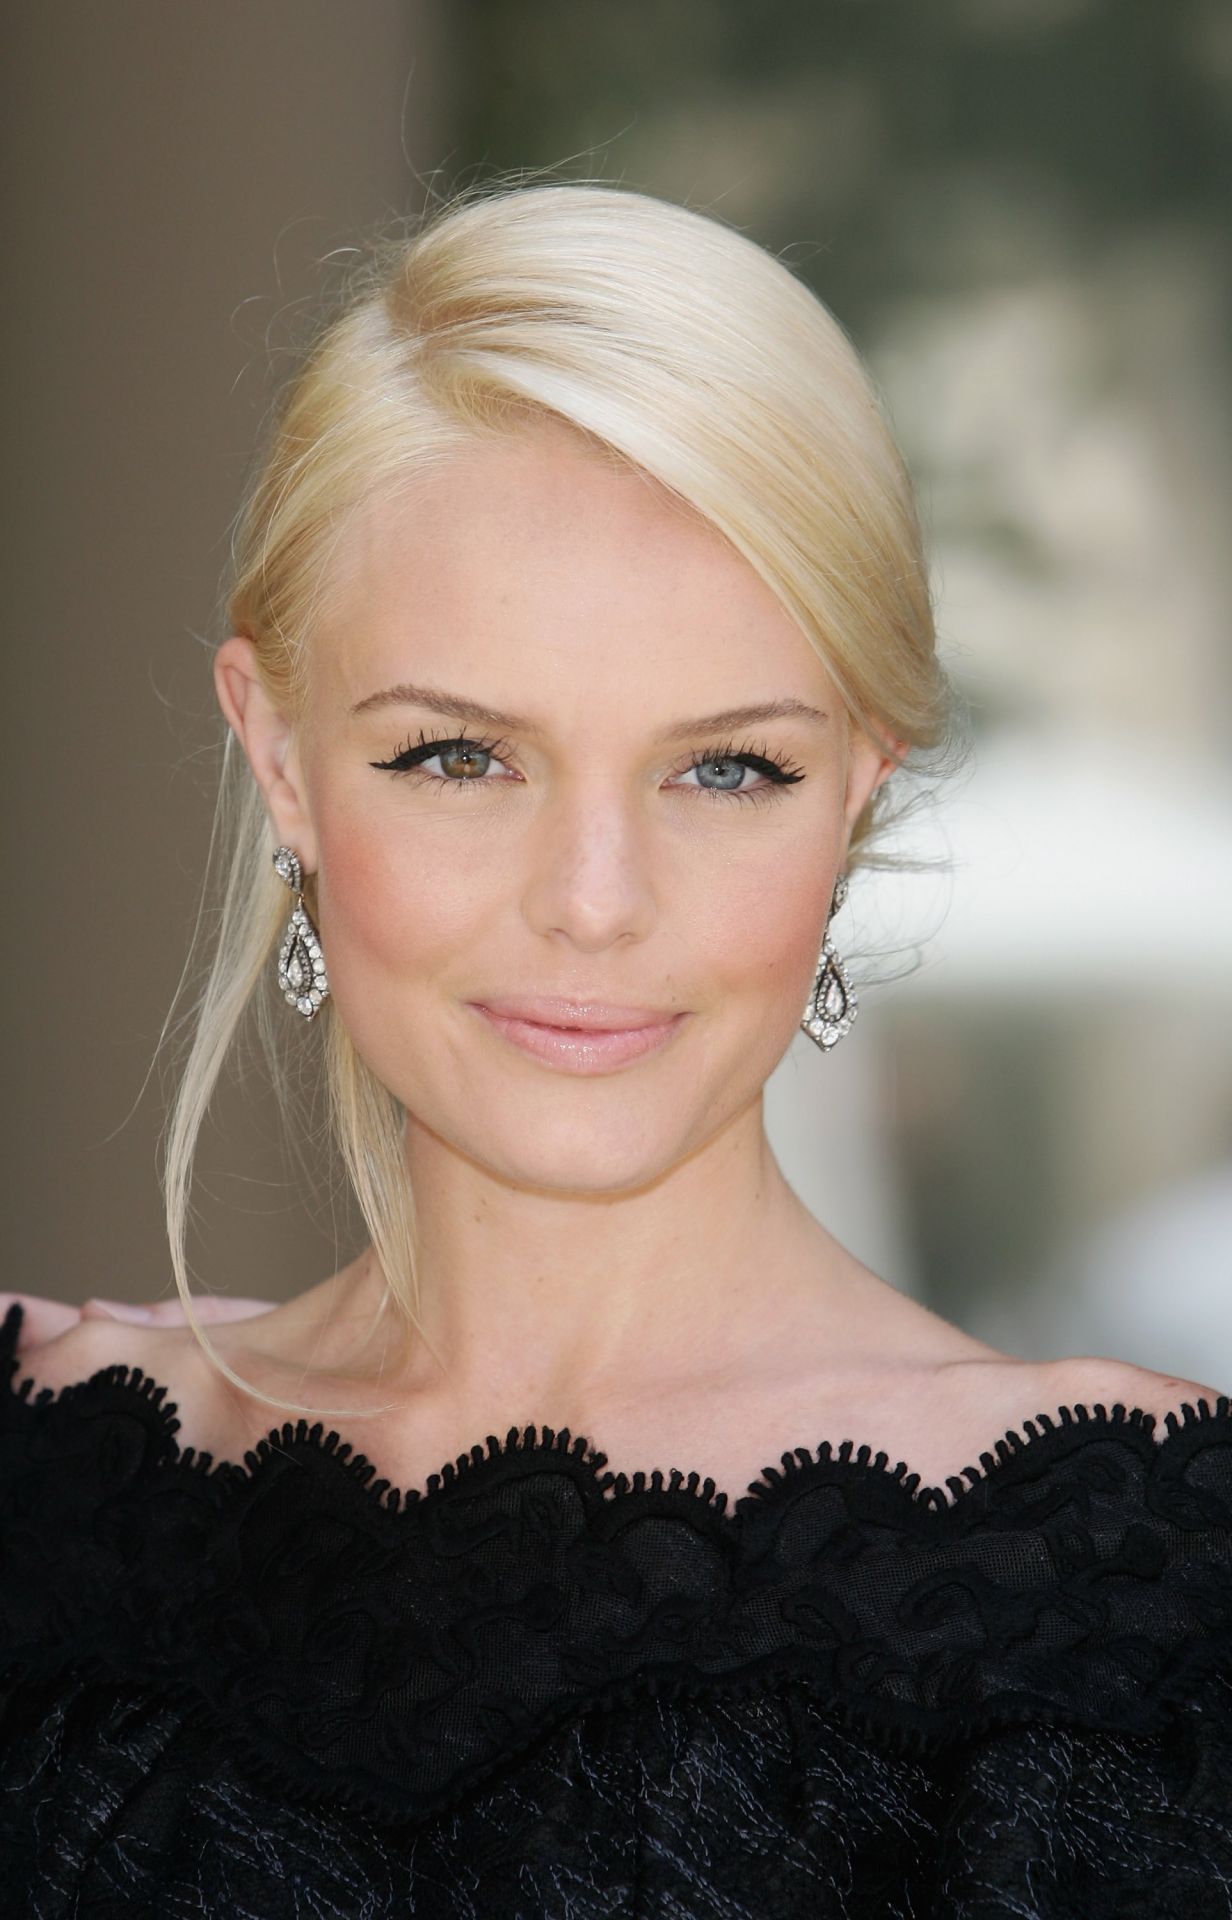 Stahlblau mit braun. Das ist der Farbmix bei US-Schauspielerin Kate Bosworth.